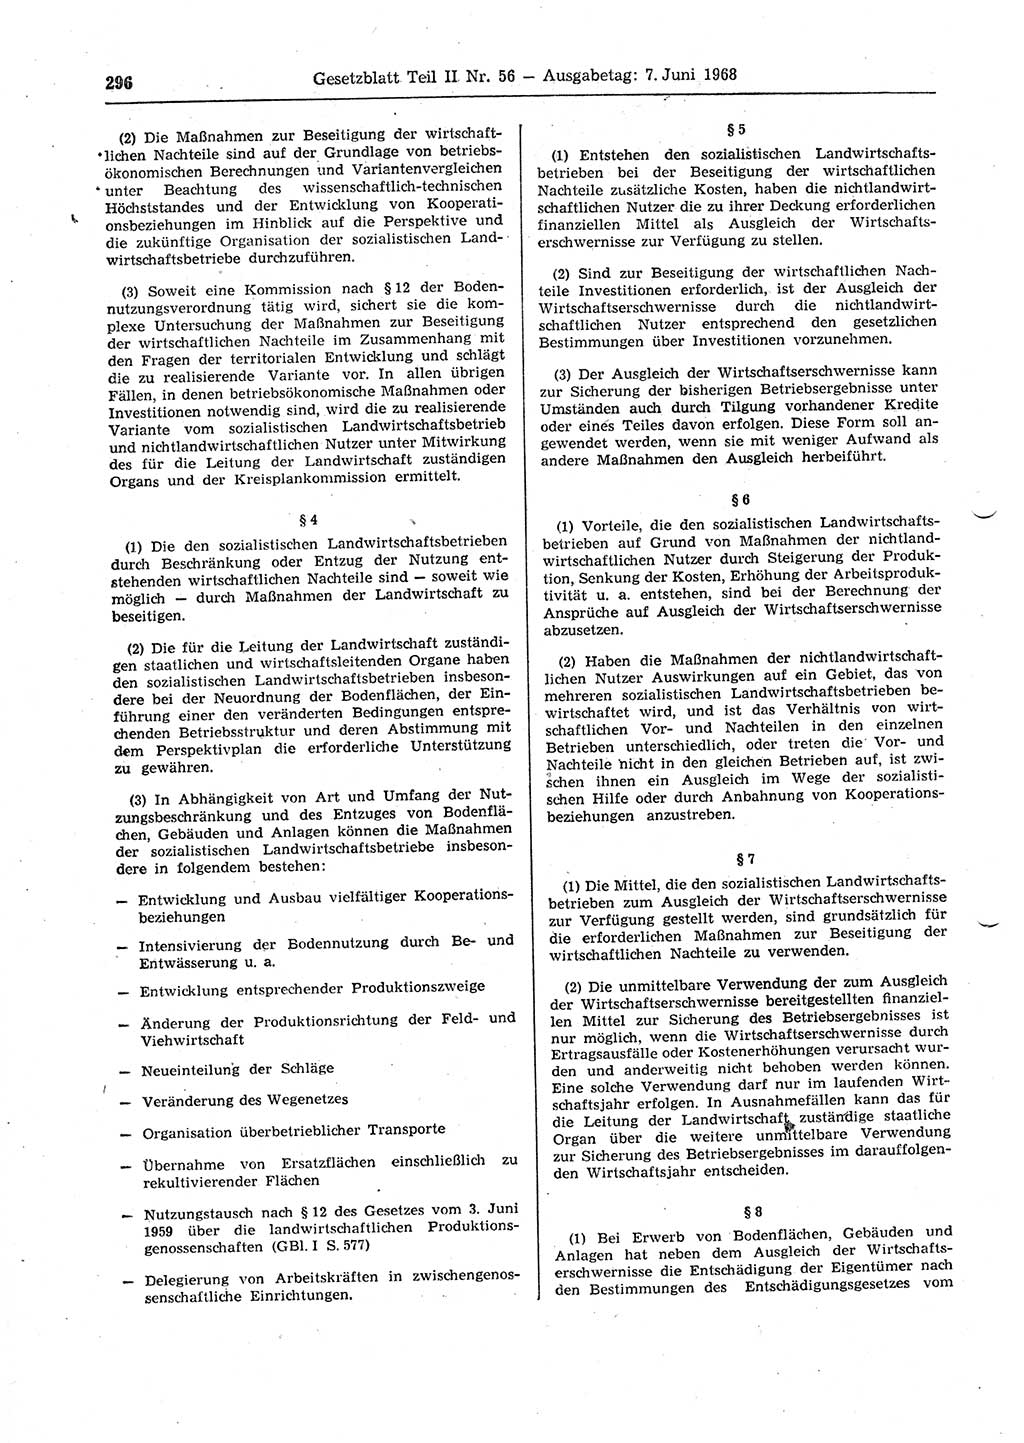 Gesetzblatt (GBl.) der Deutschen Demokratischen Republik (DDR) Teil ⅠⅠ 1968, Seite 296 (GBl. DDR ⅠⅠ 1968, S. 296)